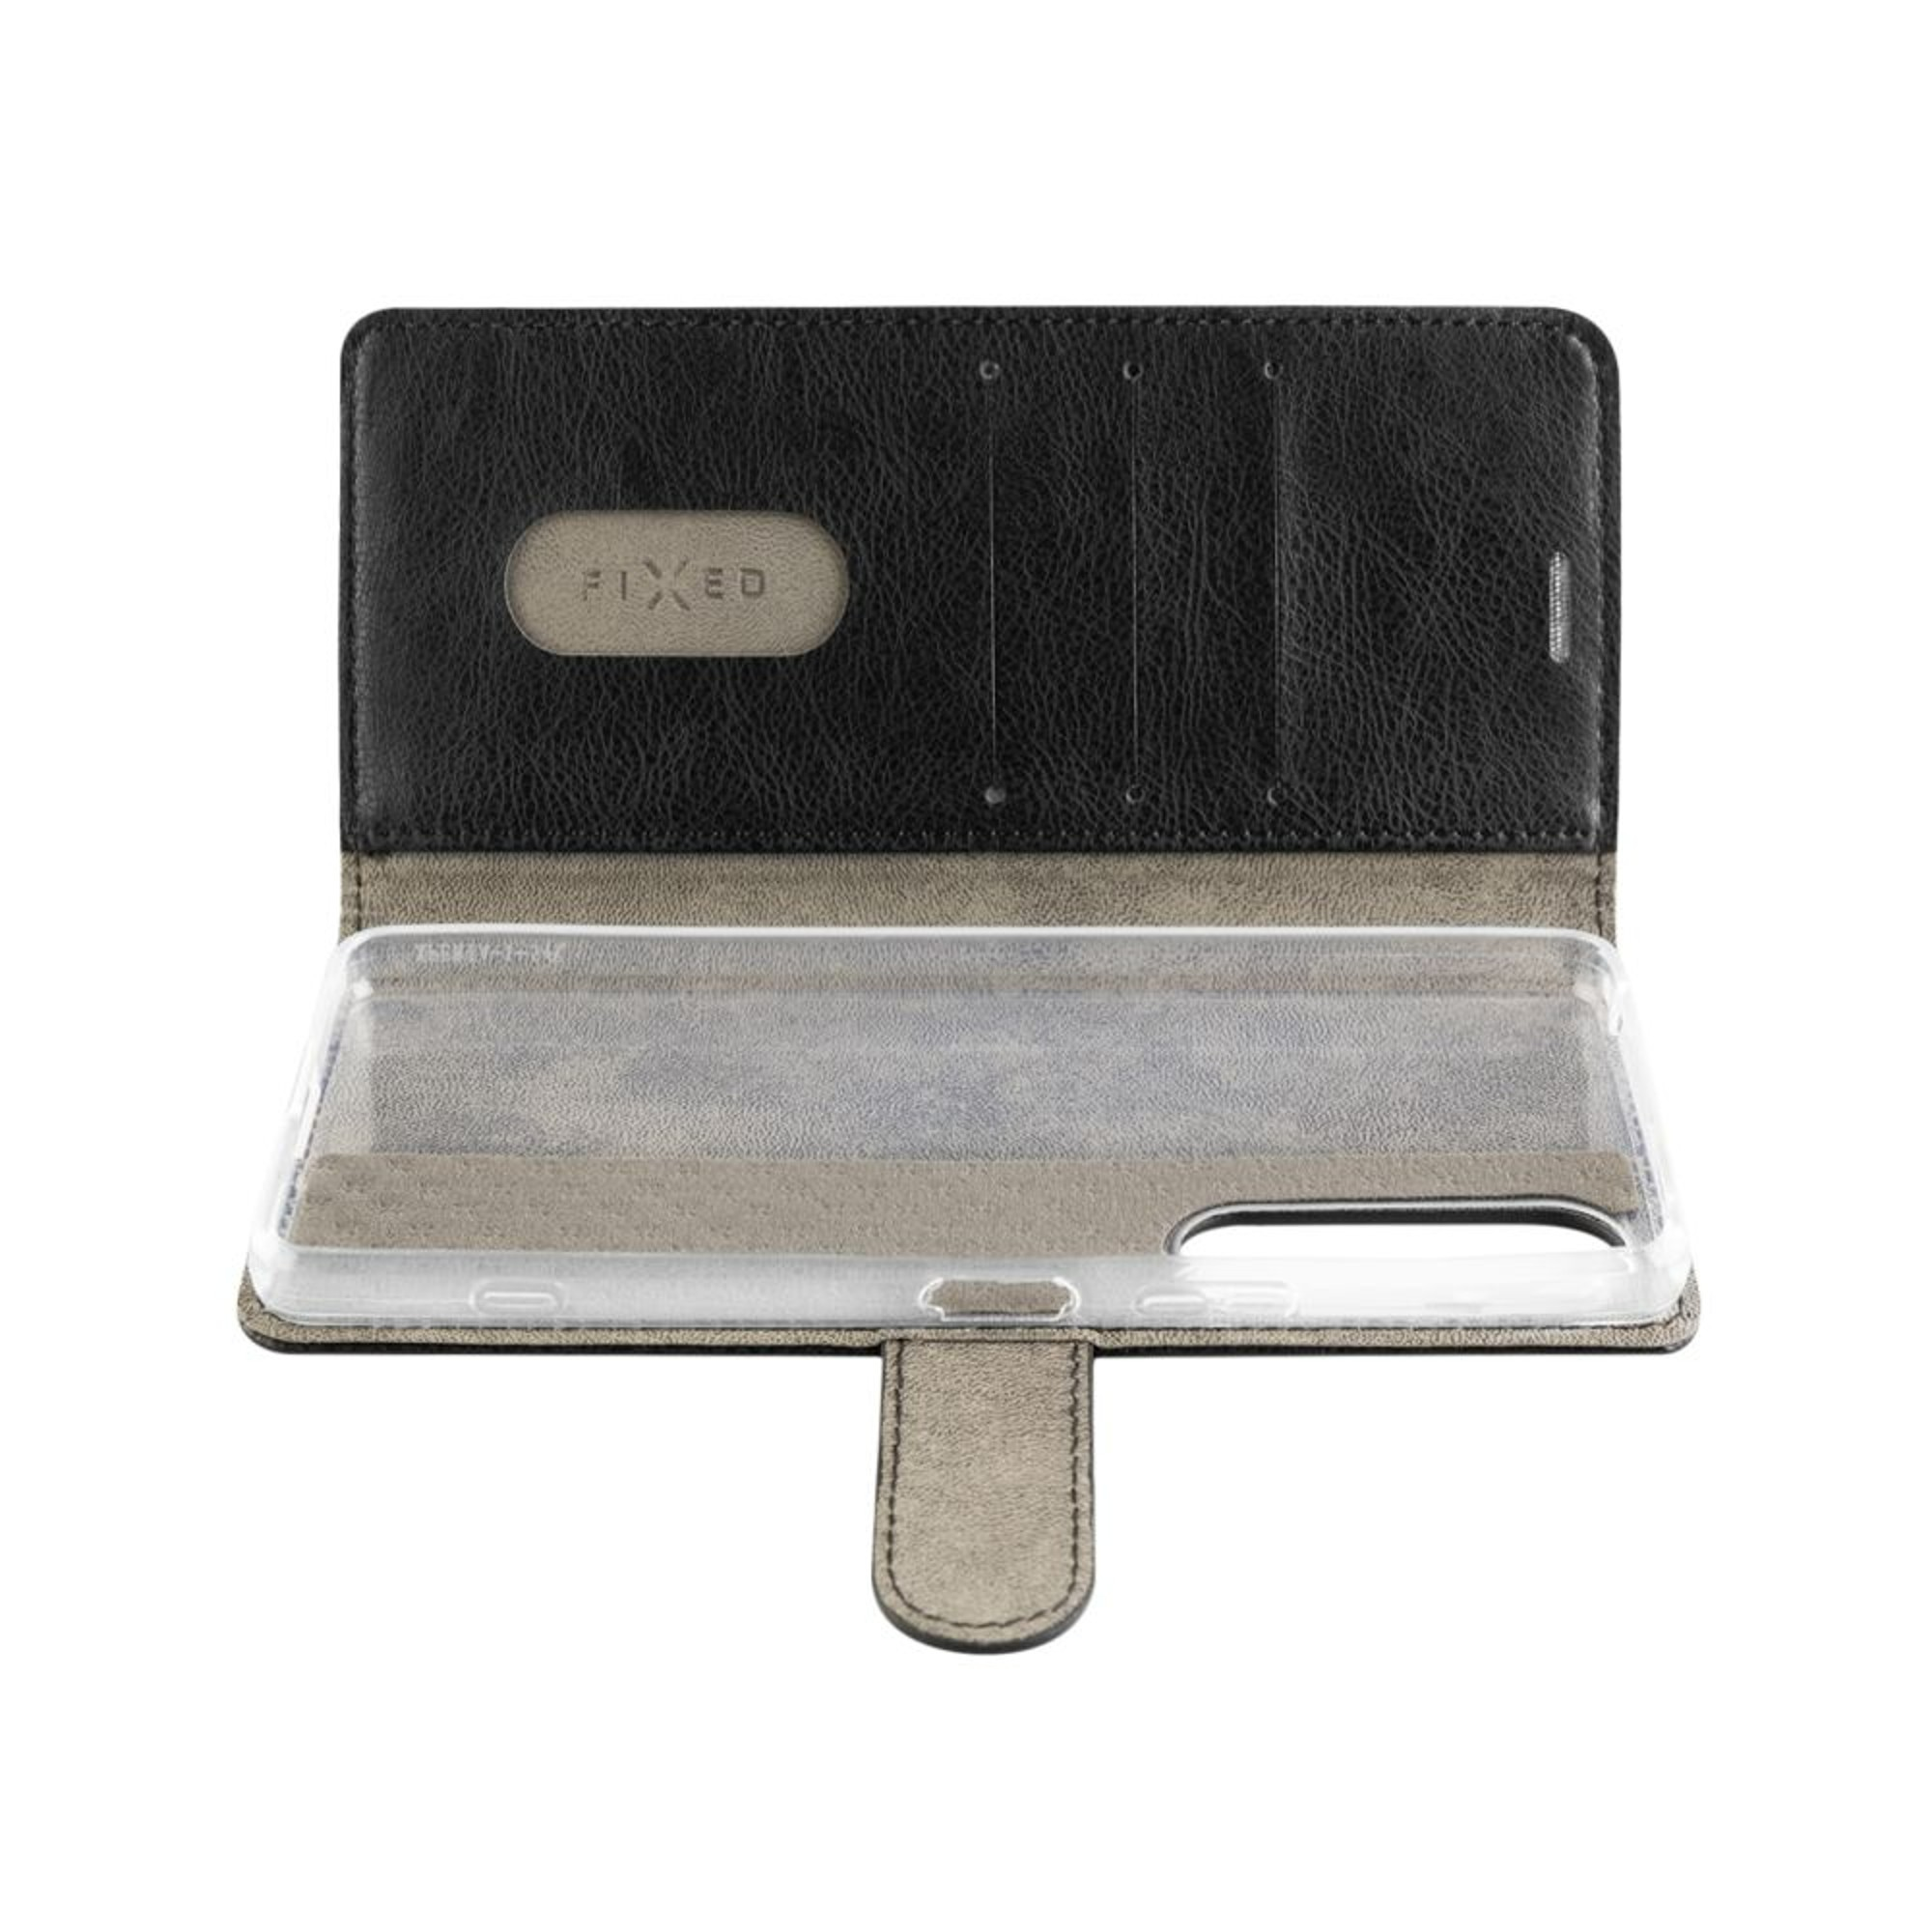 Xiaomi, Flip 5G Schwarz Lite Backcover, Case 12 FIXOP3-1078-BK, NE, FIXED Opus